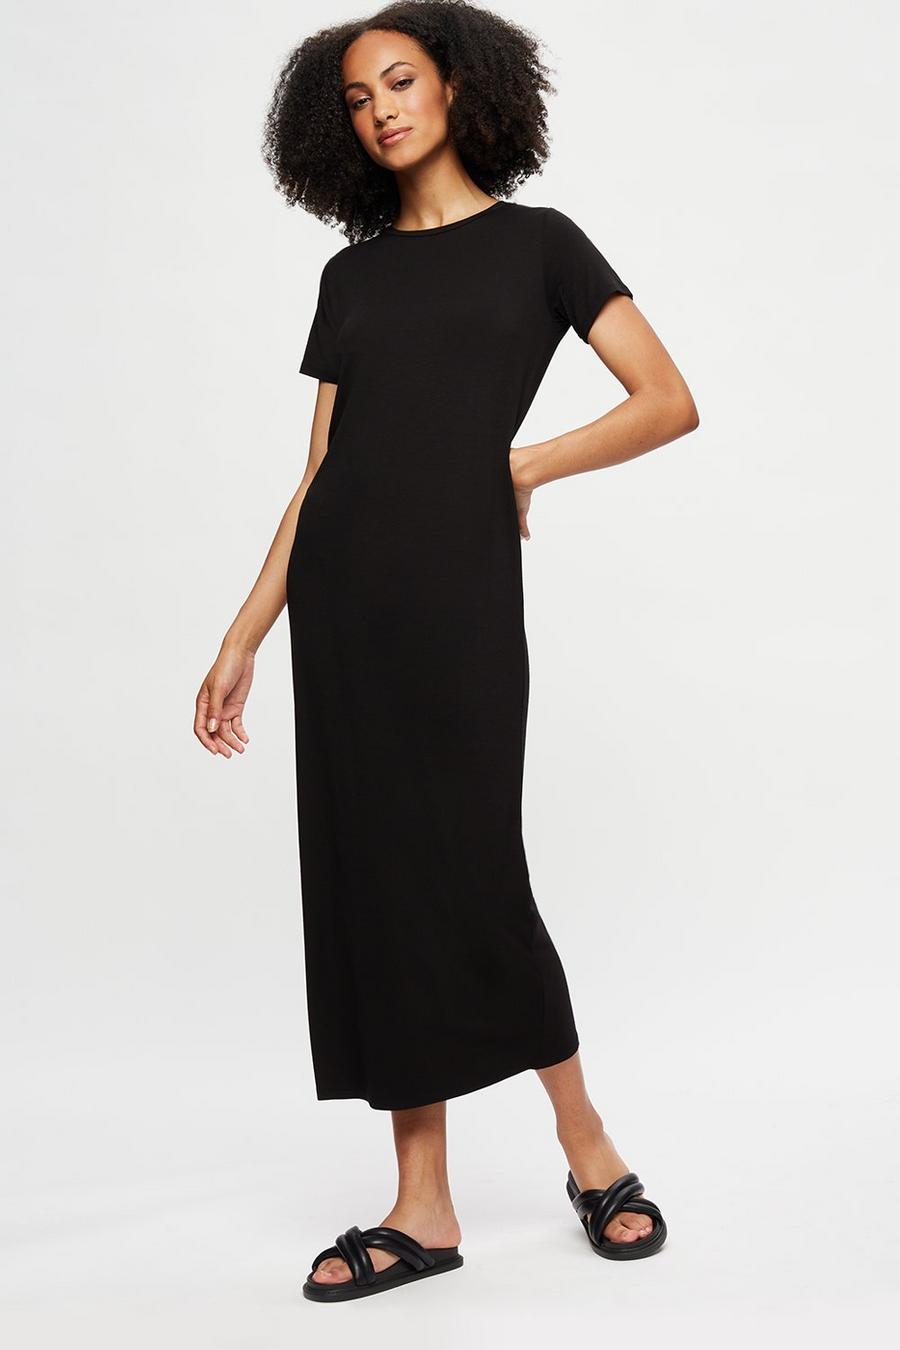 Tall Black T-shirt Midi Dress